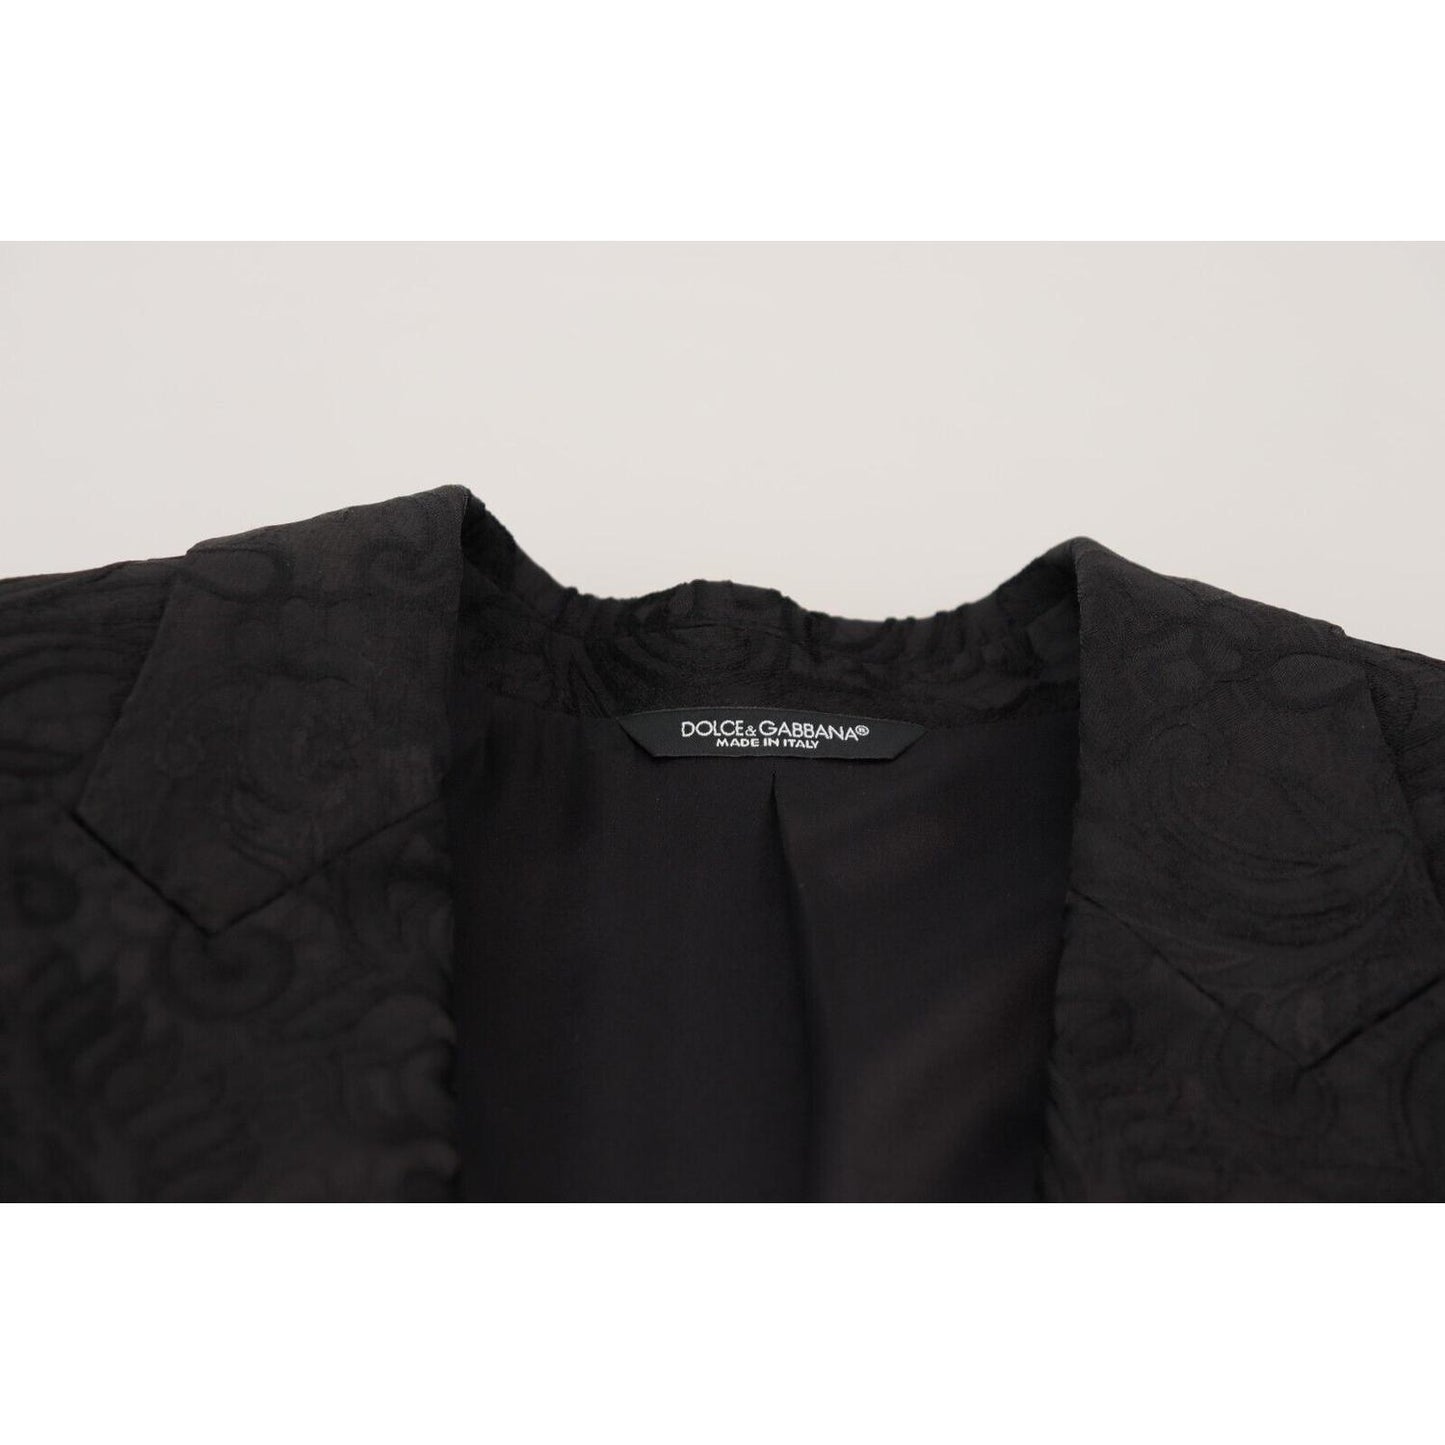 Dolce & Gabbana Elegant Slim Fit Peak Lapel Blazer black-floral-jacquard-single-breasted-martini-blazer